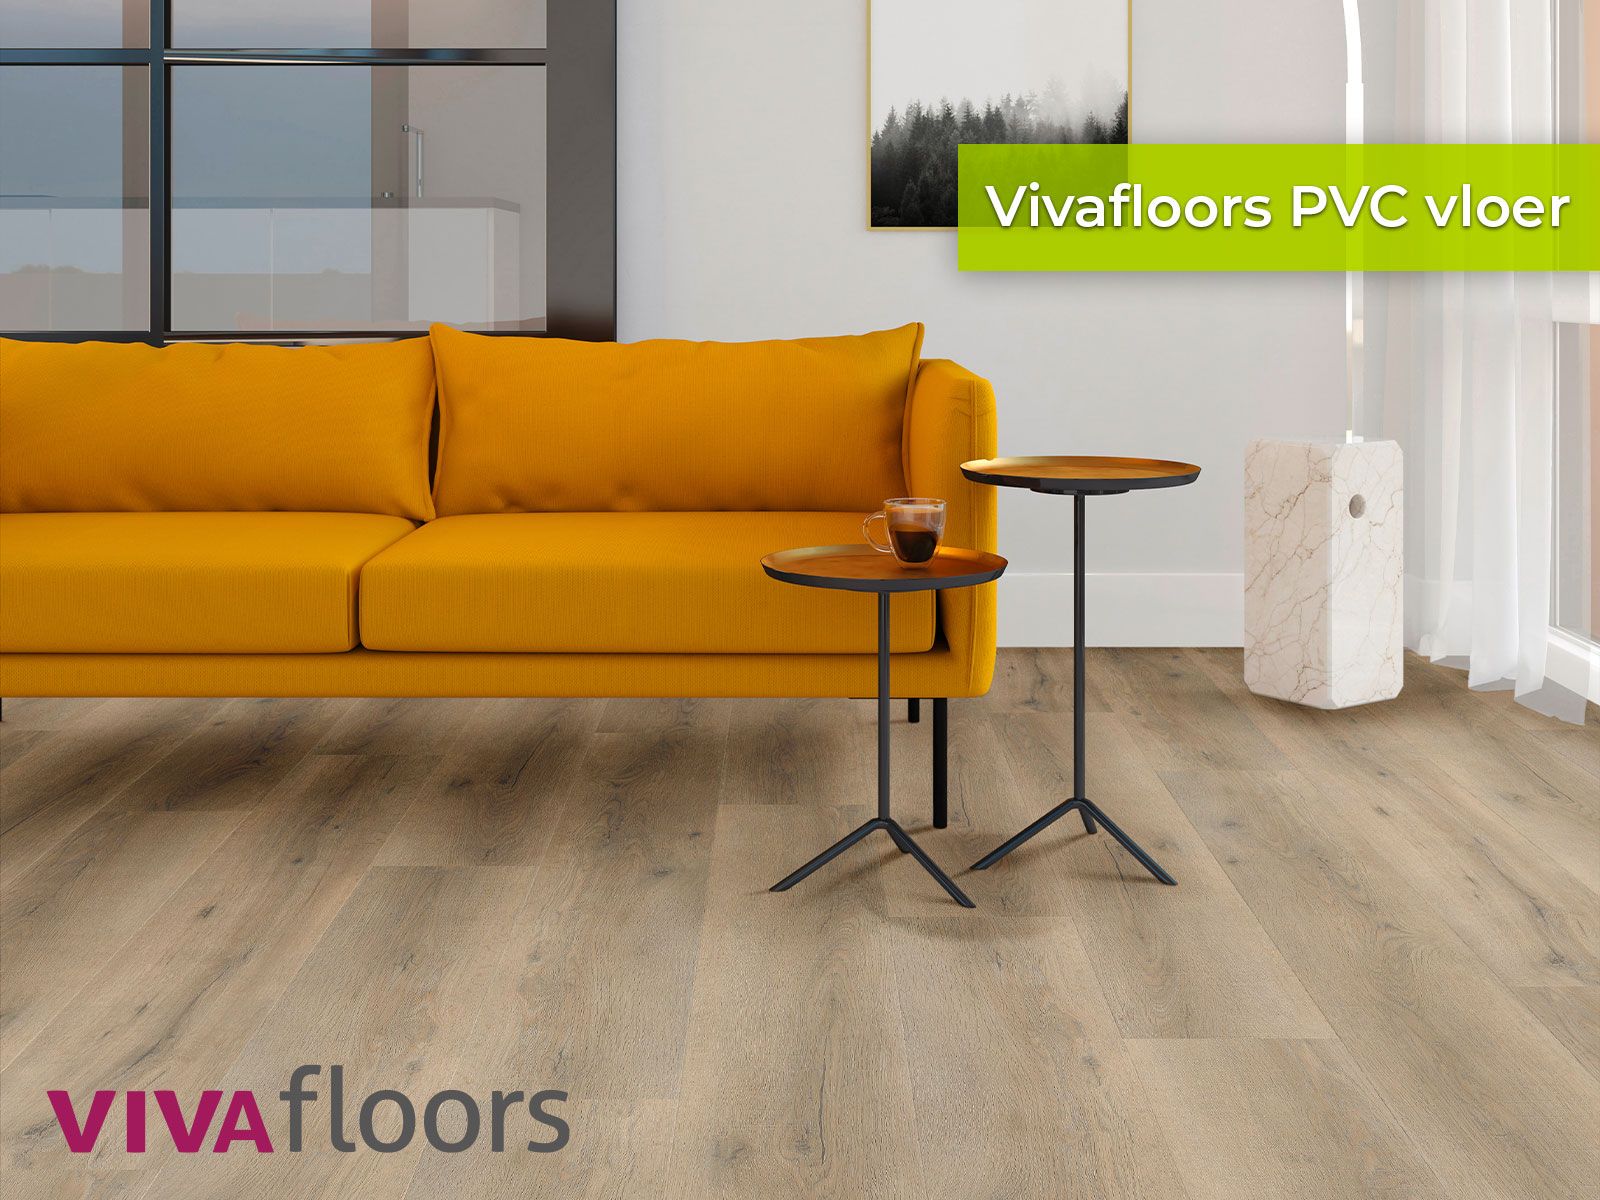 Vivafloors PVC vloer